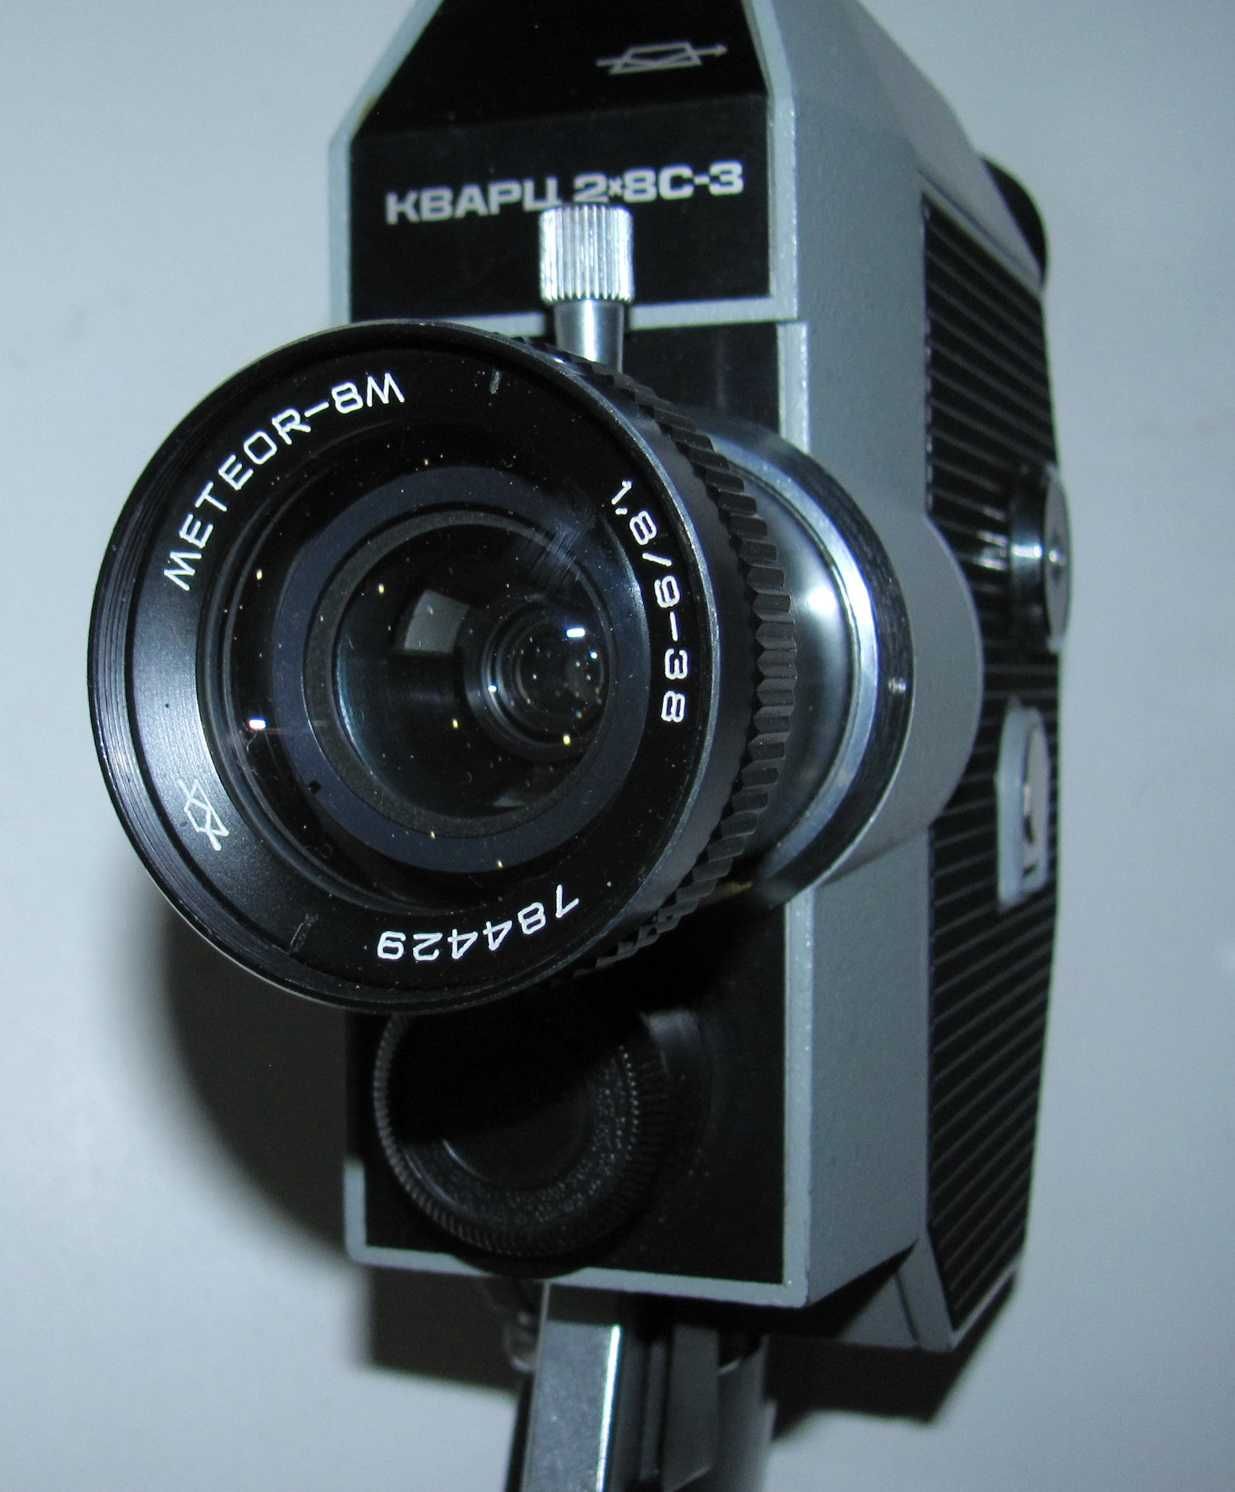 Кинокамера Кварц 2х8С-3, объектив Метеор 8М, в футляре